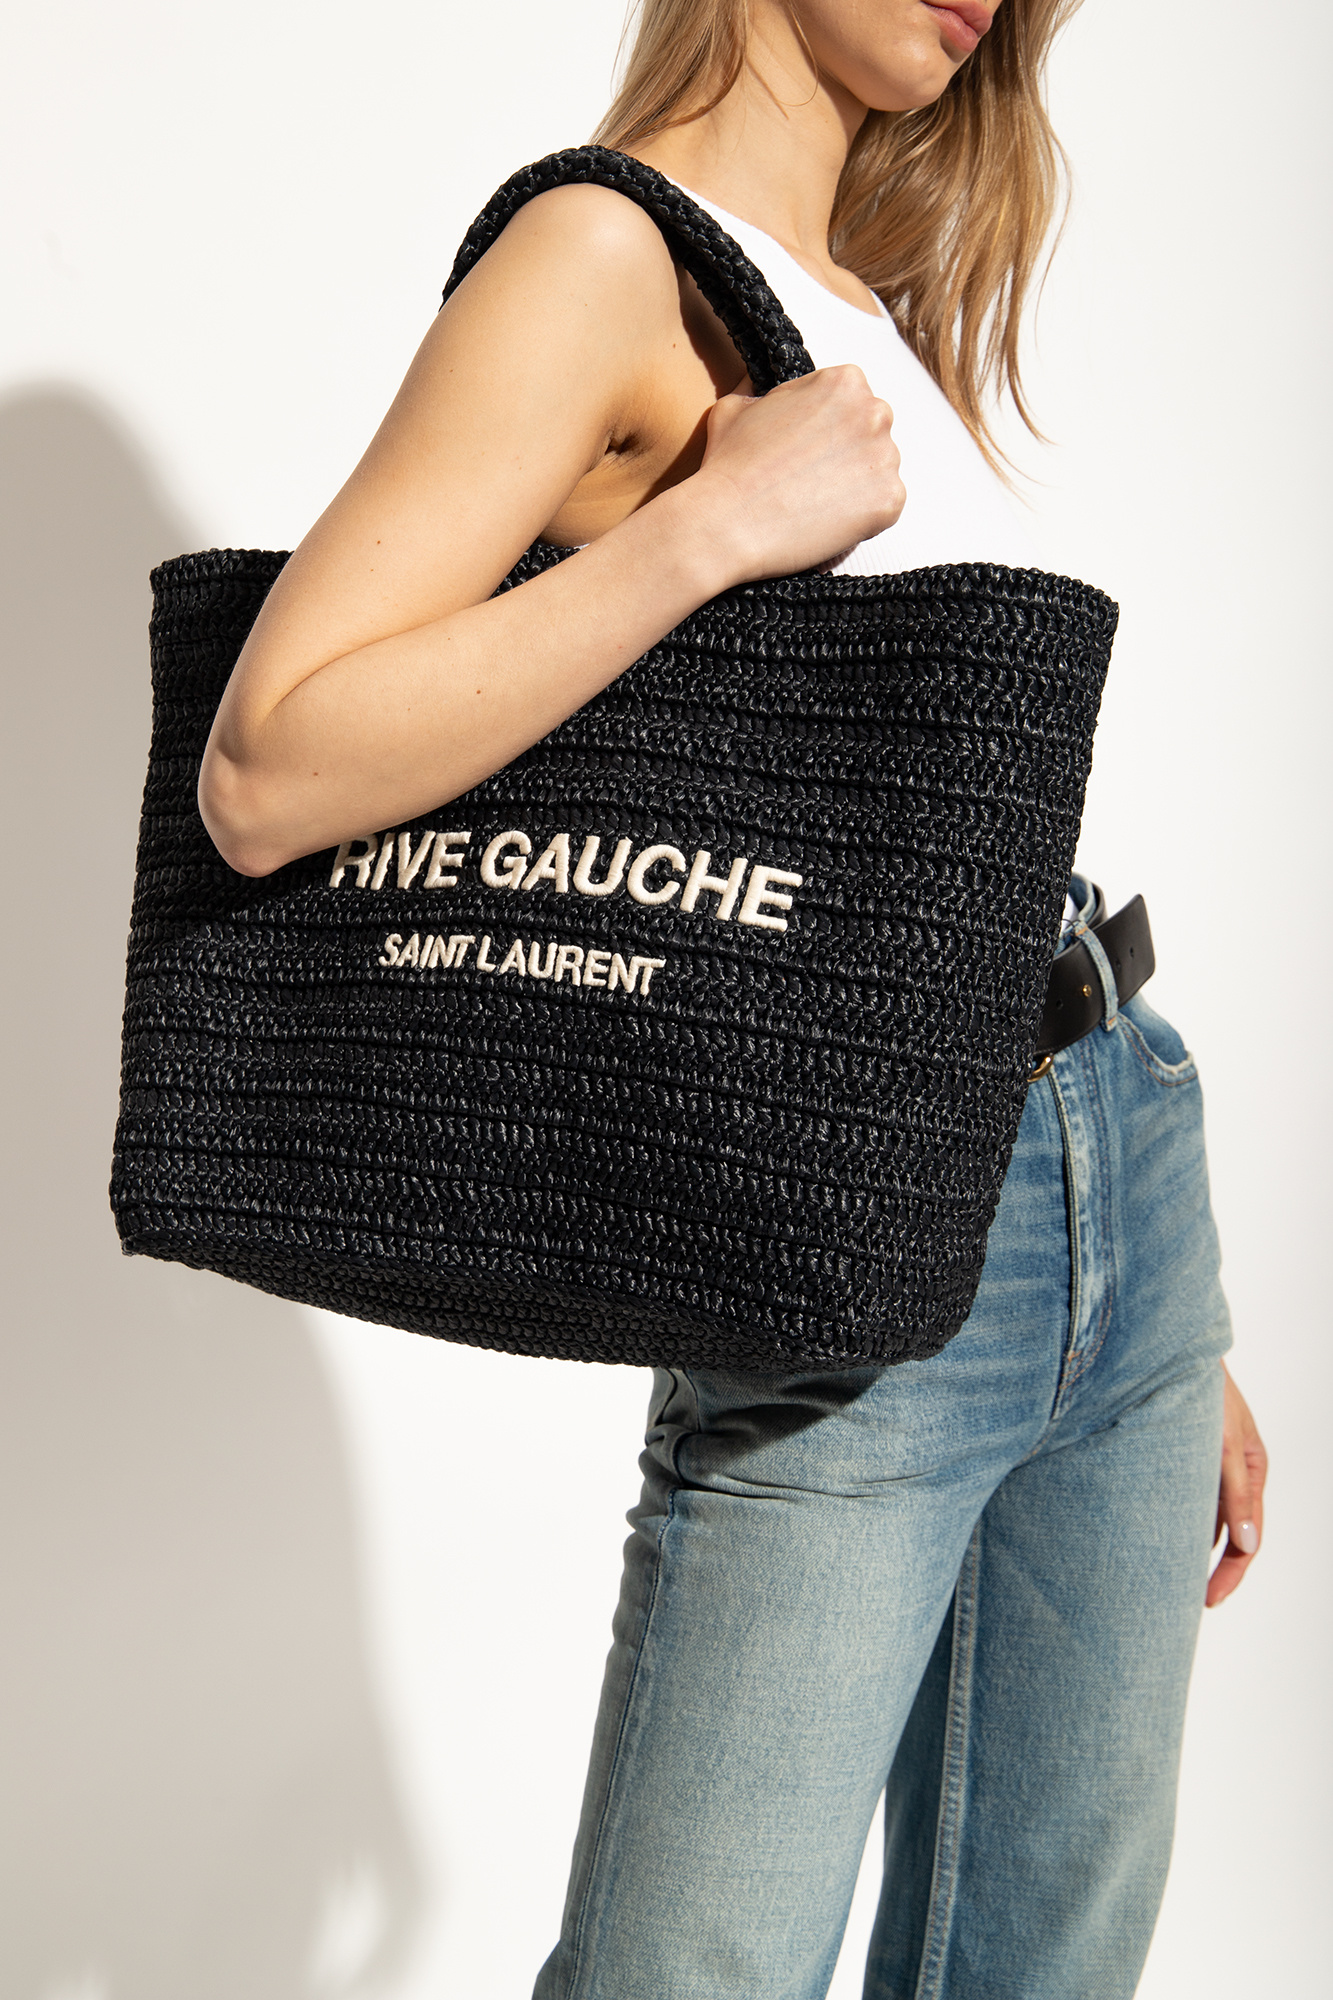 Saint Laurent Rive Gauche Black Canvas Tote Bag (Pre-Owned)